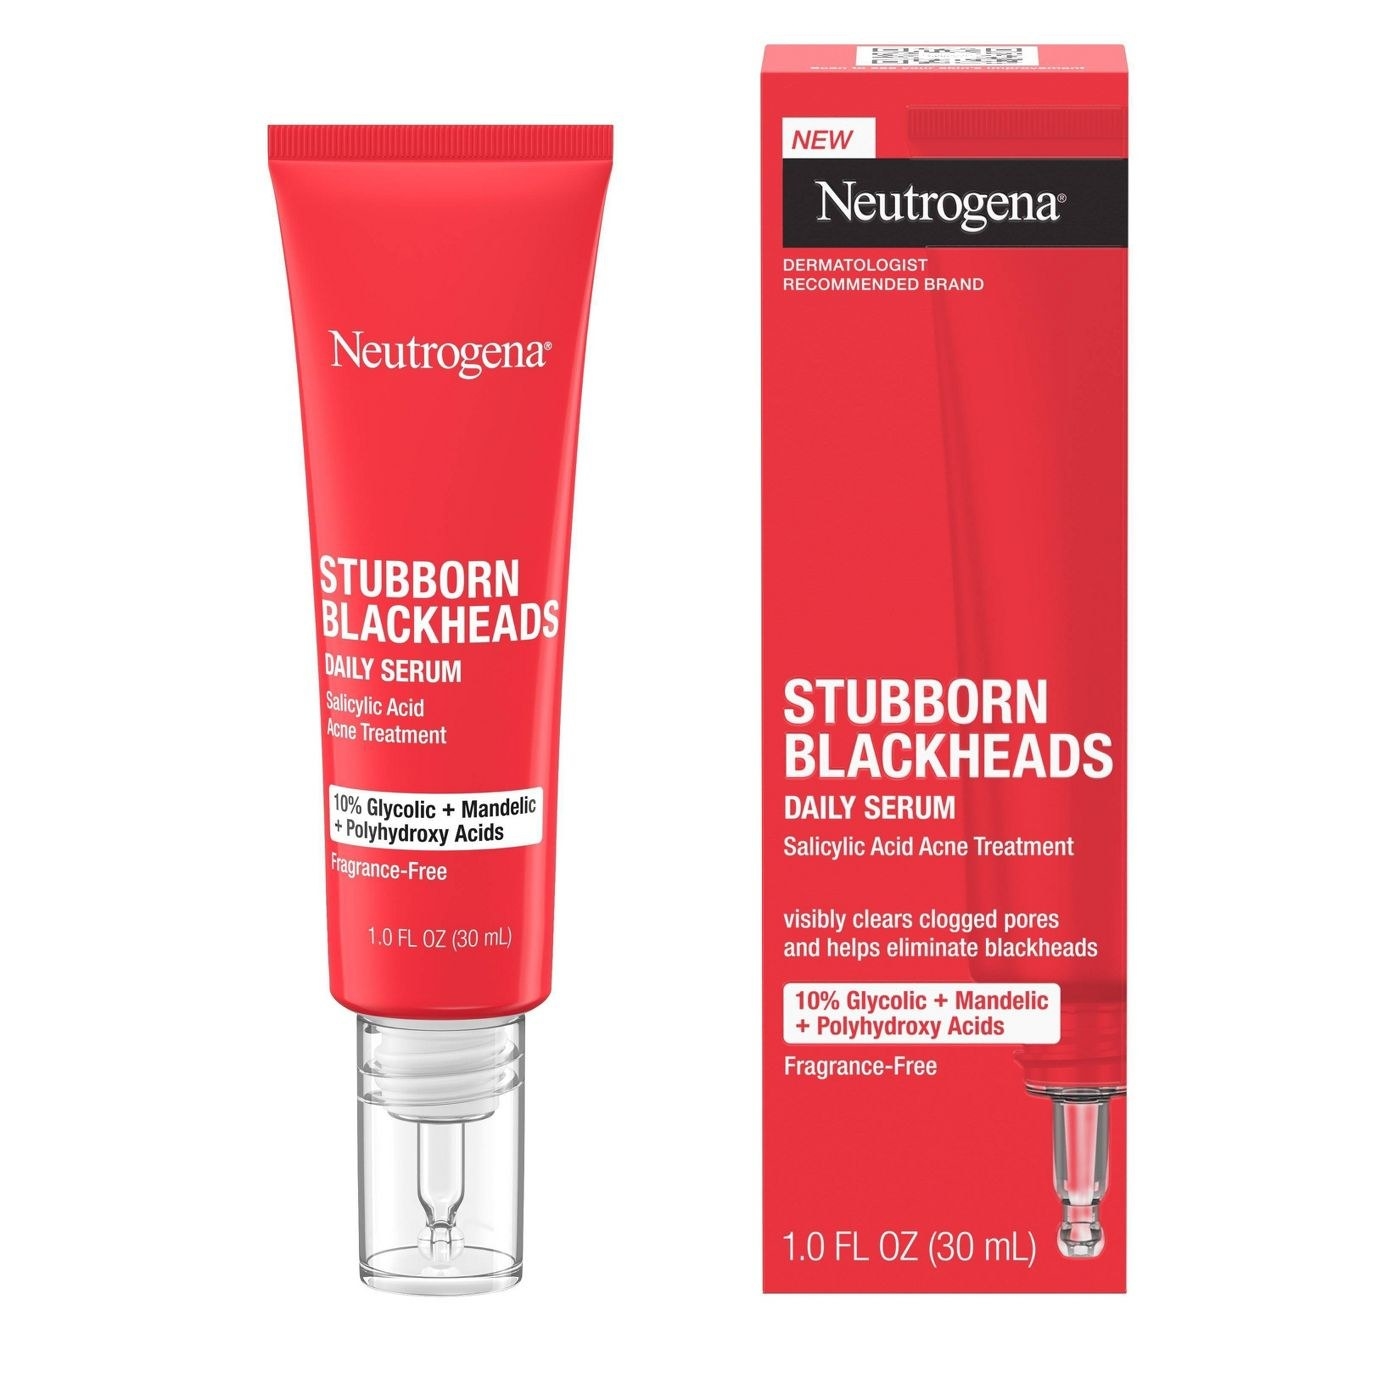 The Neutrogena daily serum